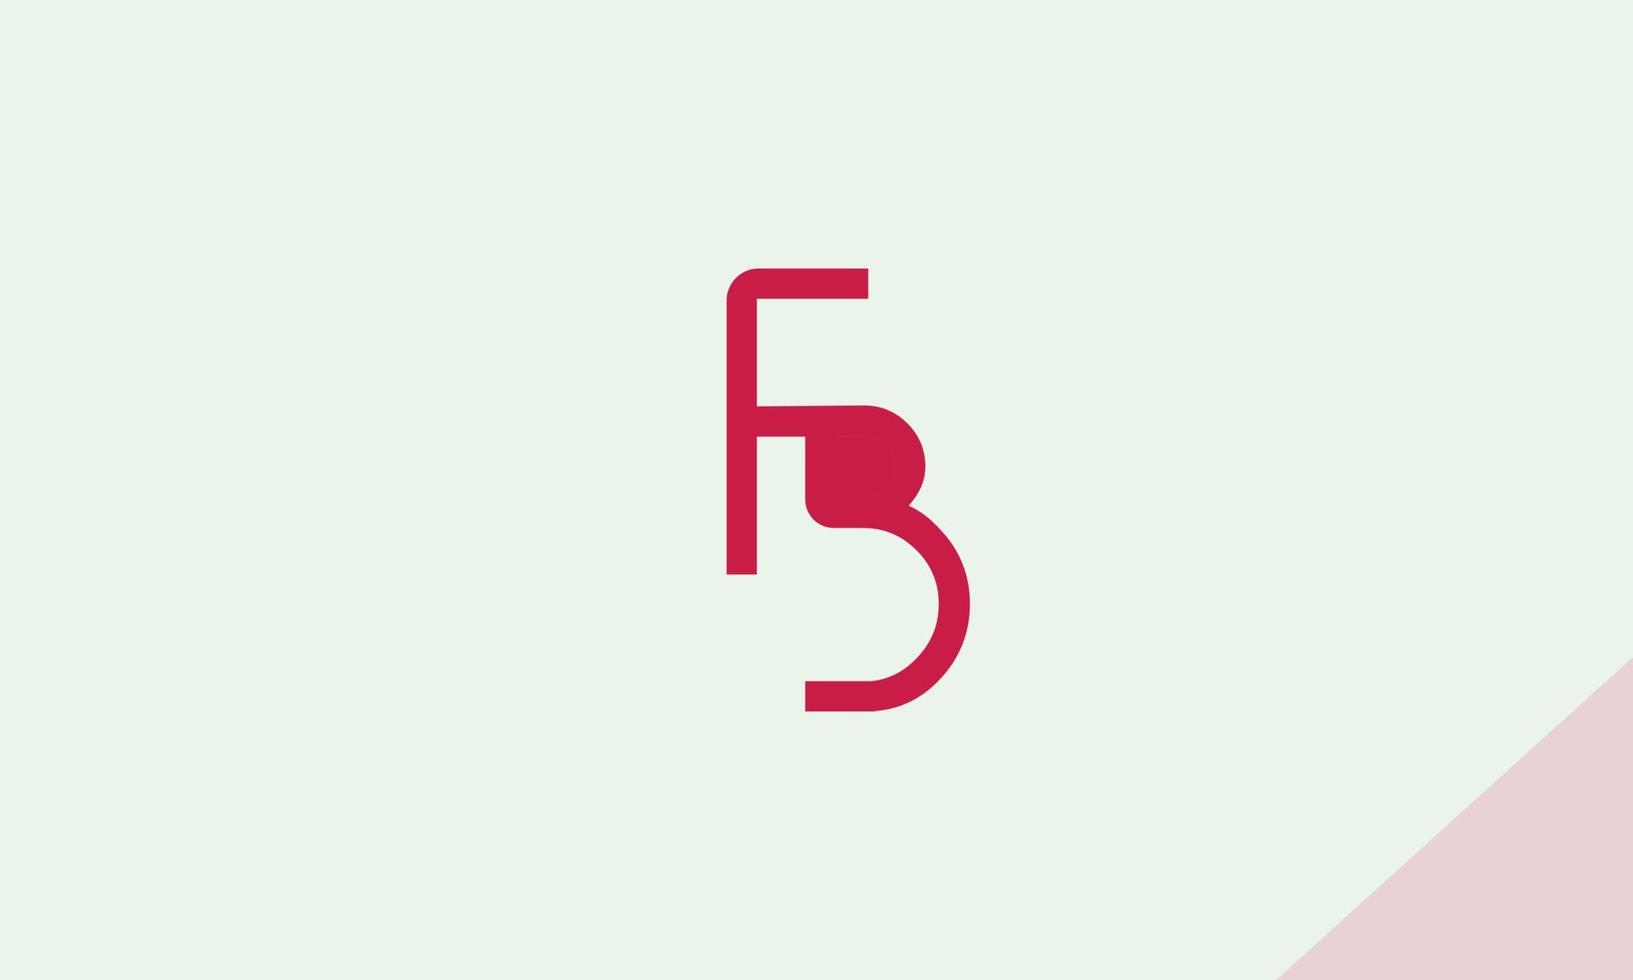 alfabetet bokstäver initialer monogram logotyp fb, bf, f och b vektor